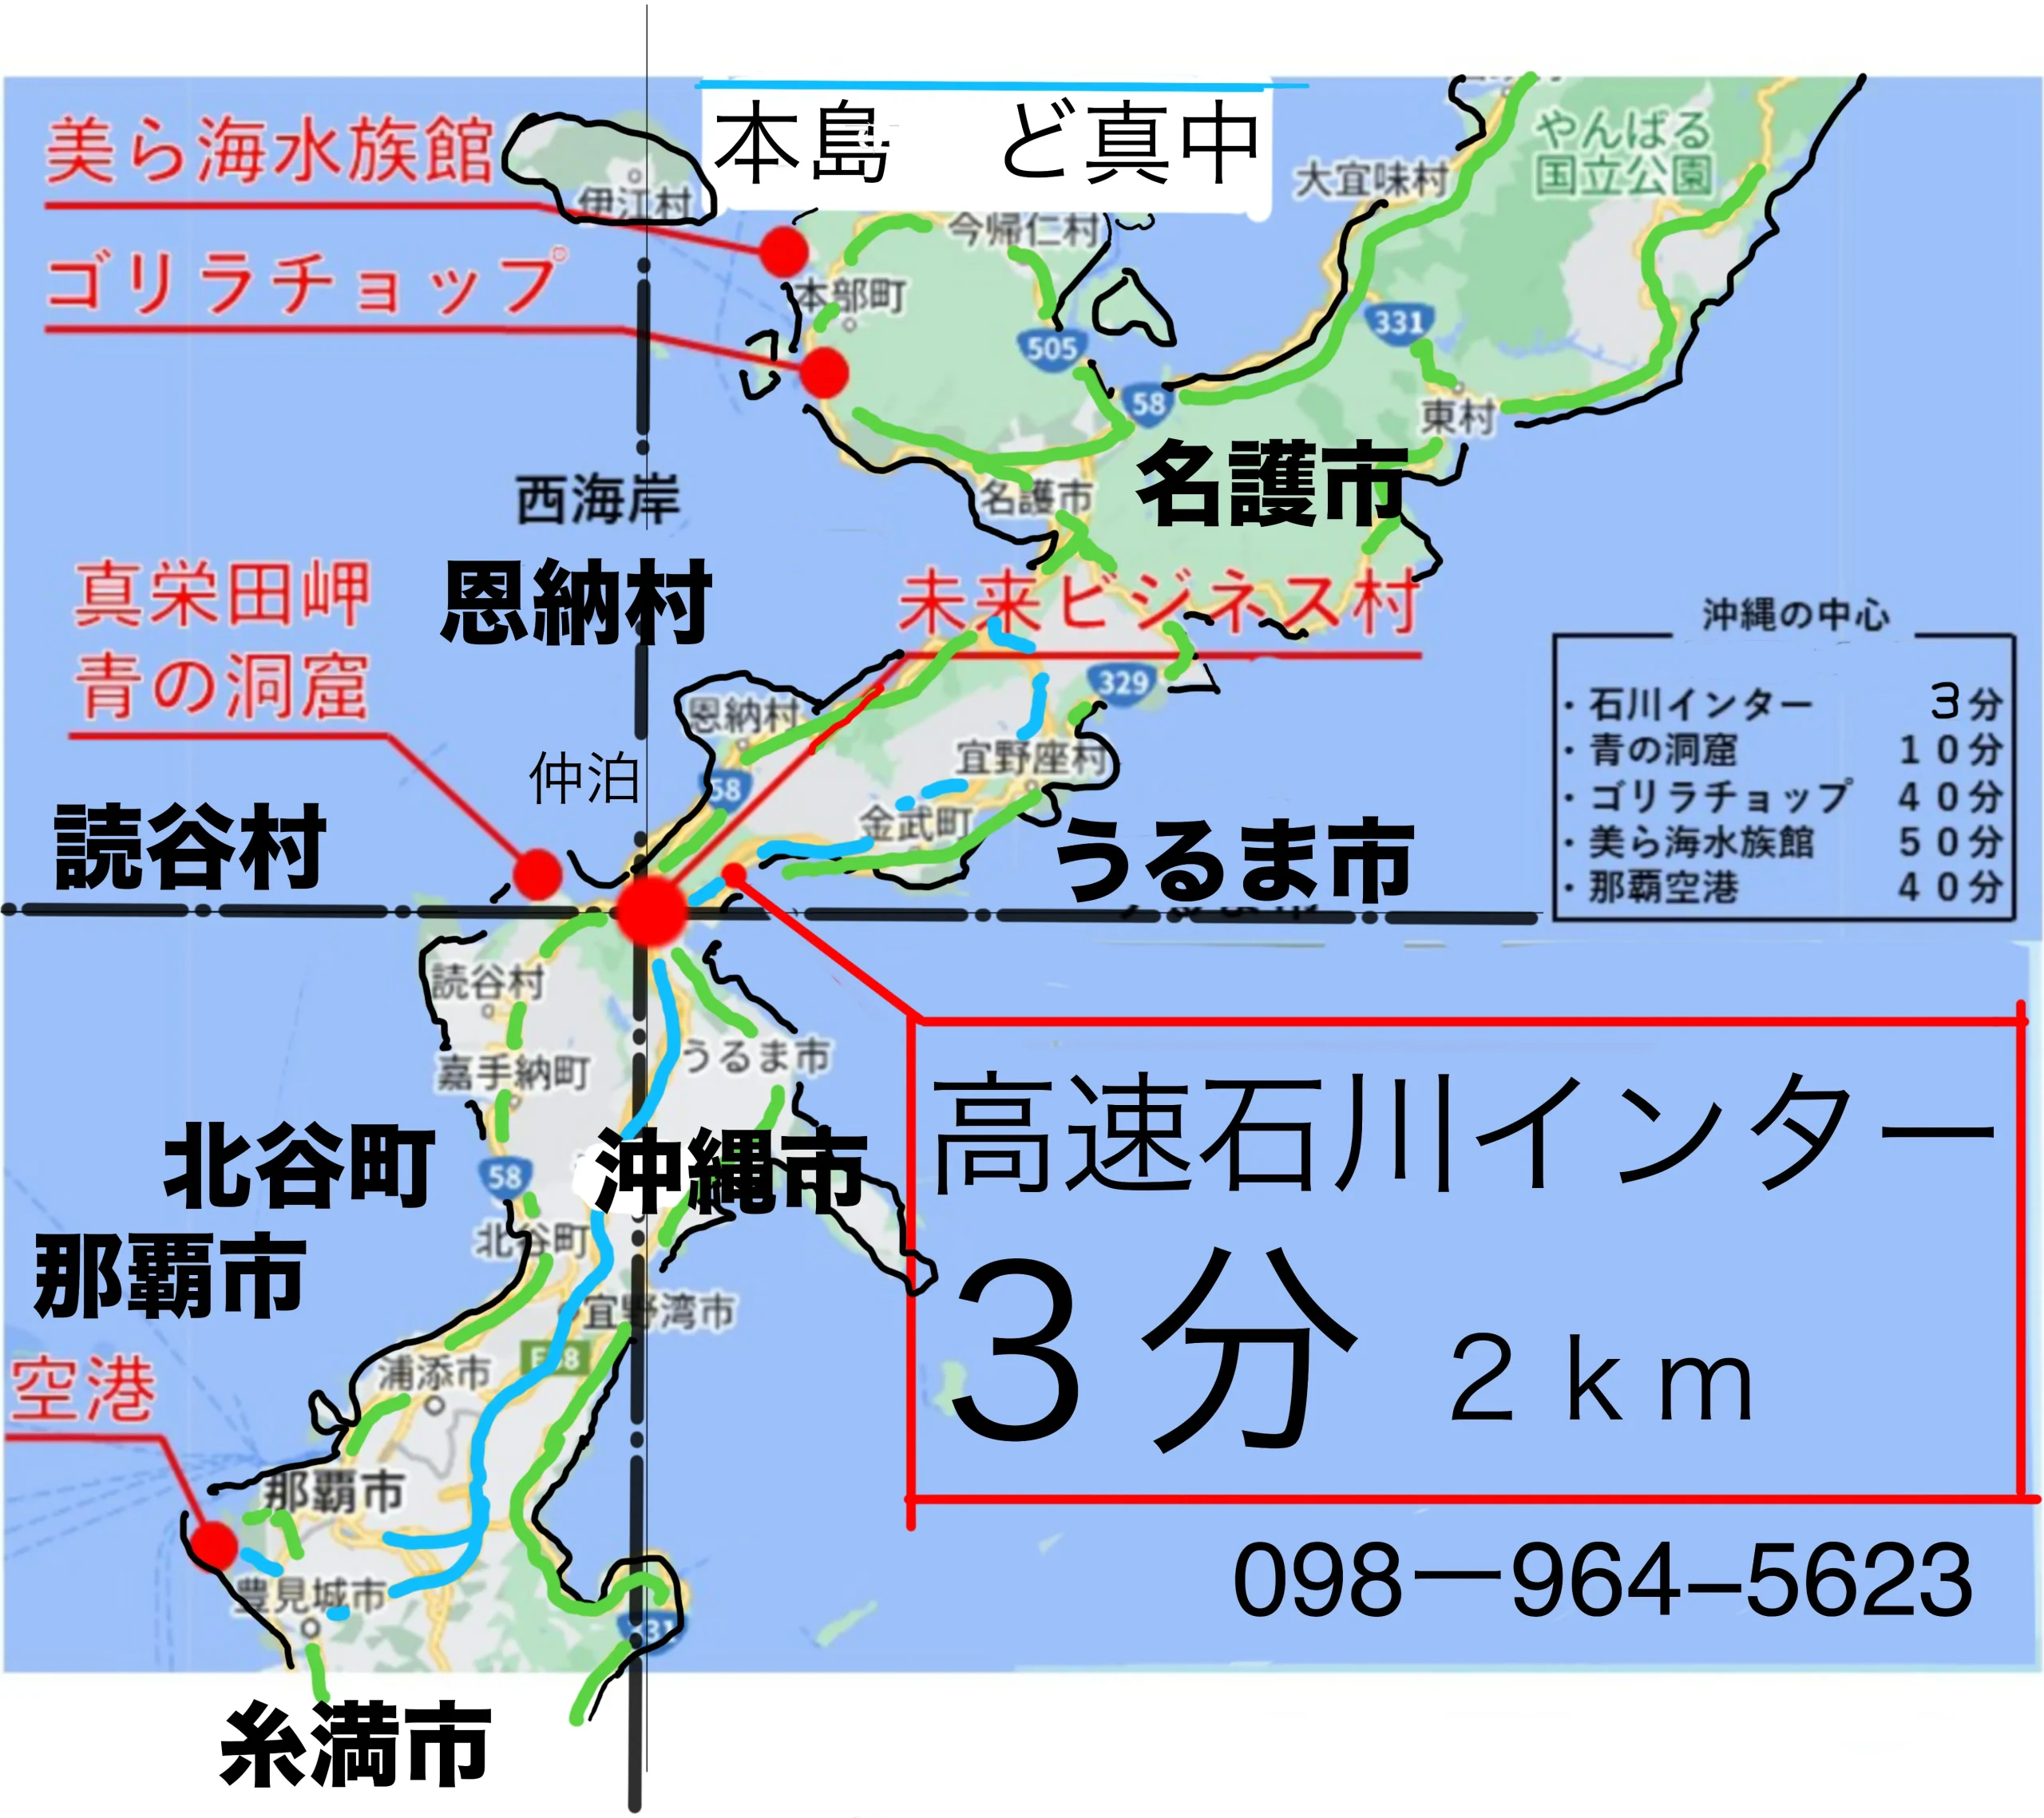 沖縄本島地図